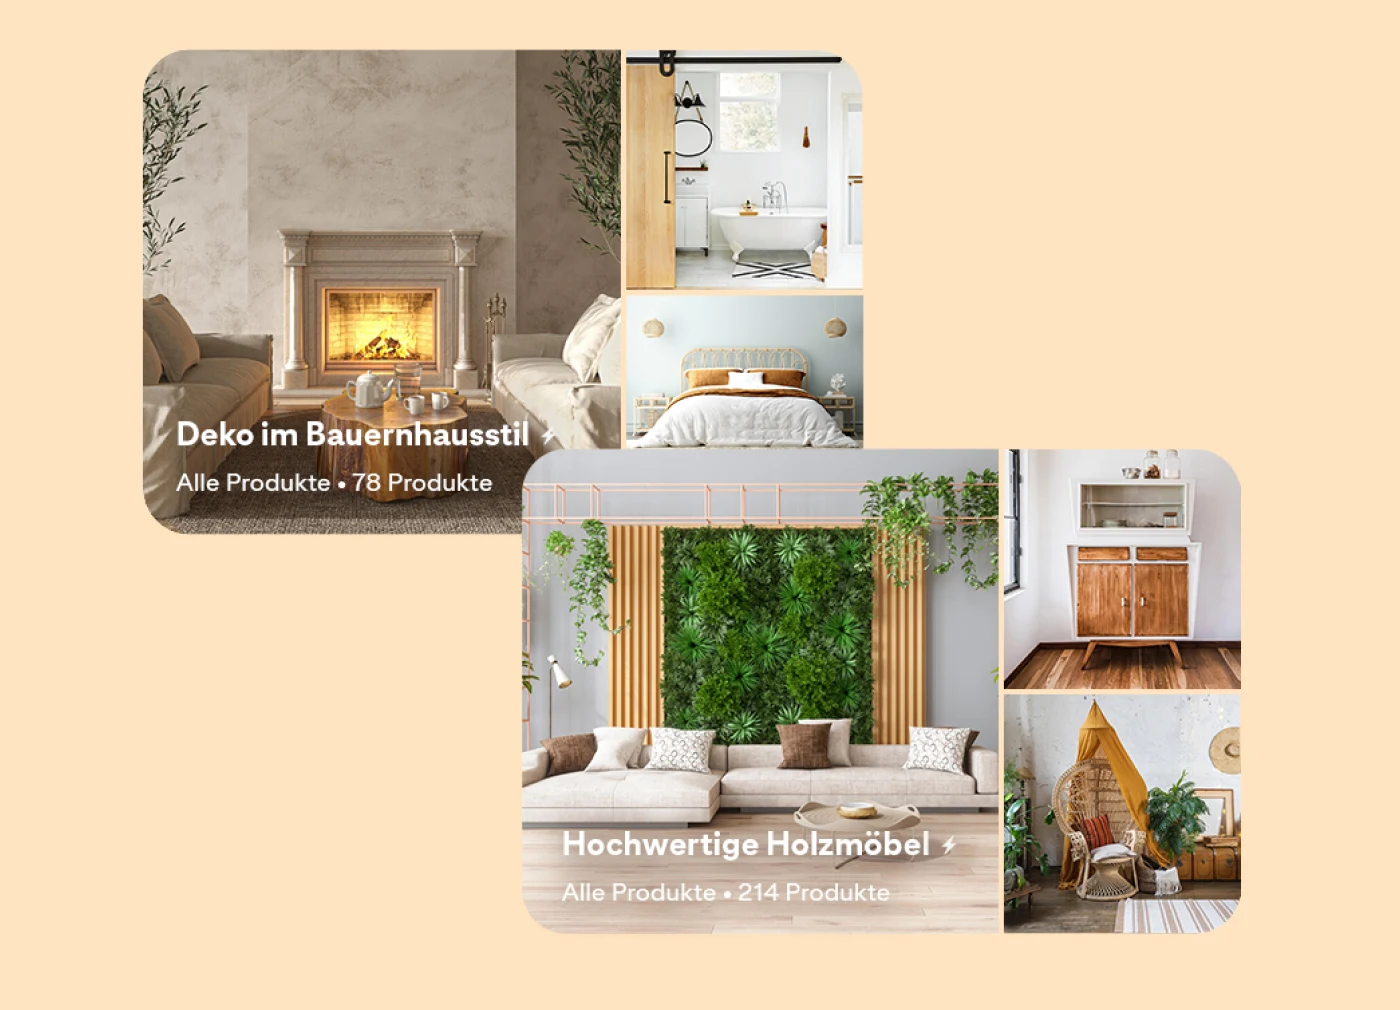 Zwei Pinnwände bei Pinterest nebeneinander dargestellt: eine zum Thema Einrichtung im Landhausstil mit drei Fotos; Wohn-, Schlaf- und Badezimmer. Die zweite mit hochwertigen Holzmöbeln; ein Wohnzimmer, eine moderne Kommode und ein geschmackvoller Stuhl. 